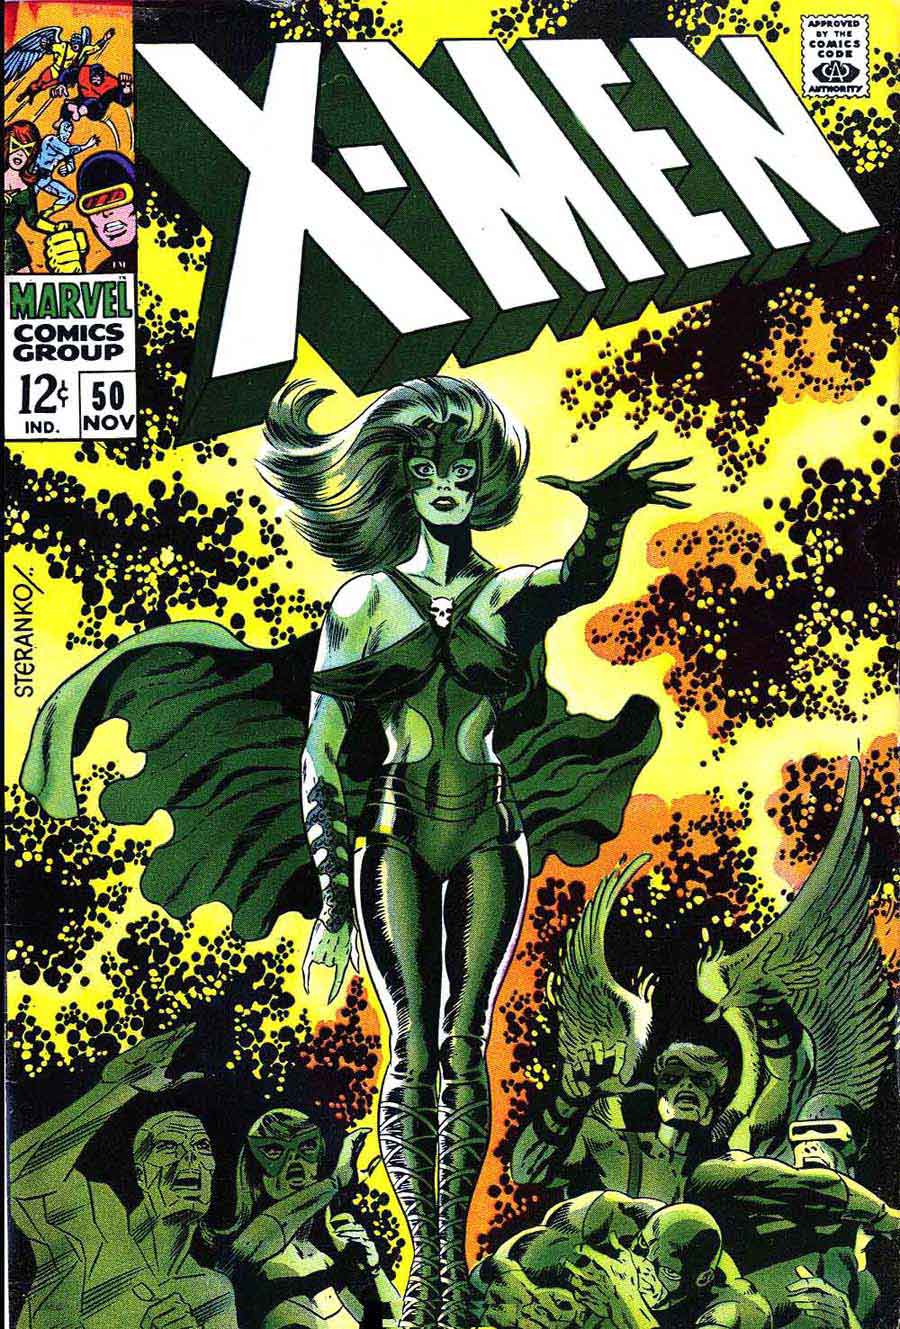 X-men v1 #50 marvel comic book cover art by Jim Steranko